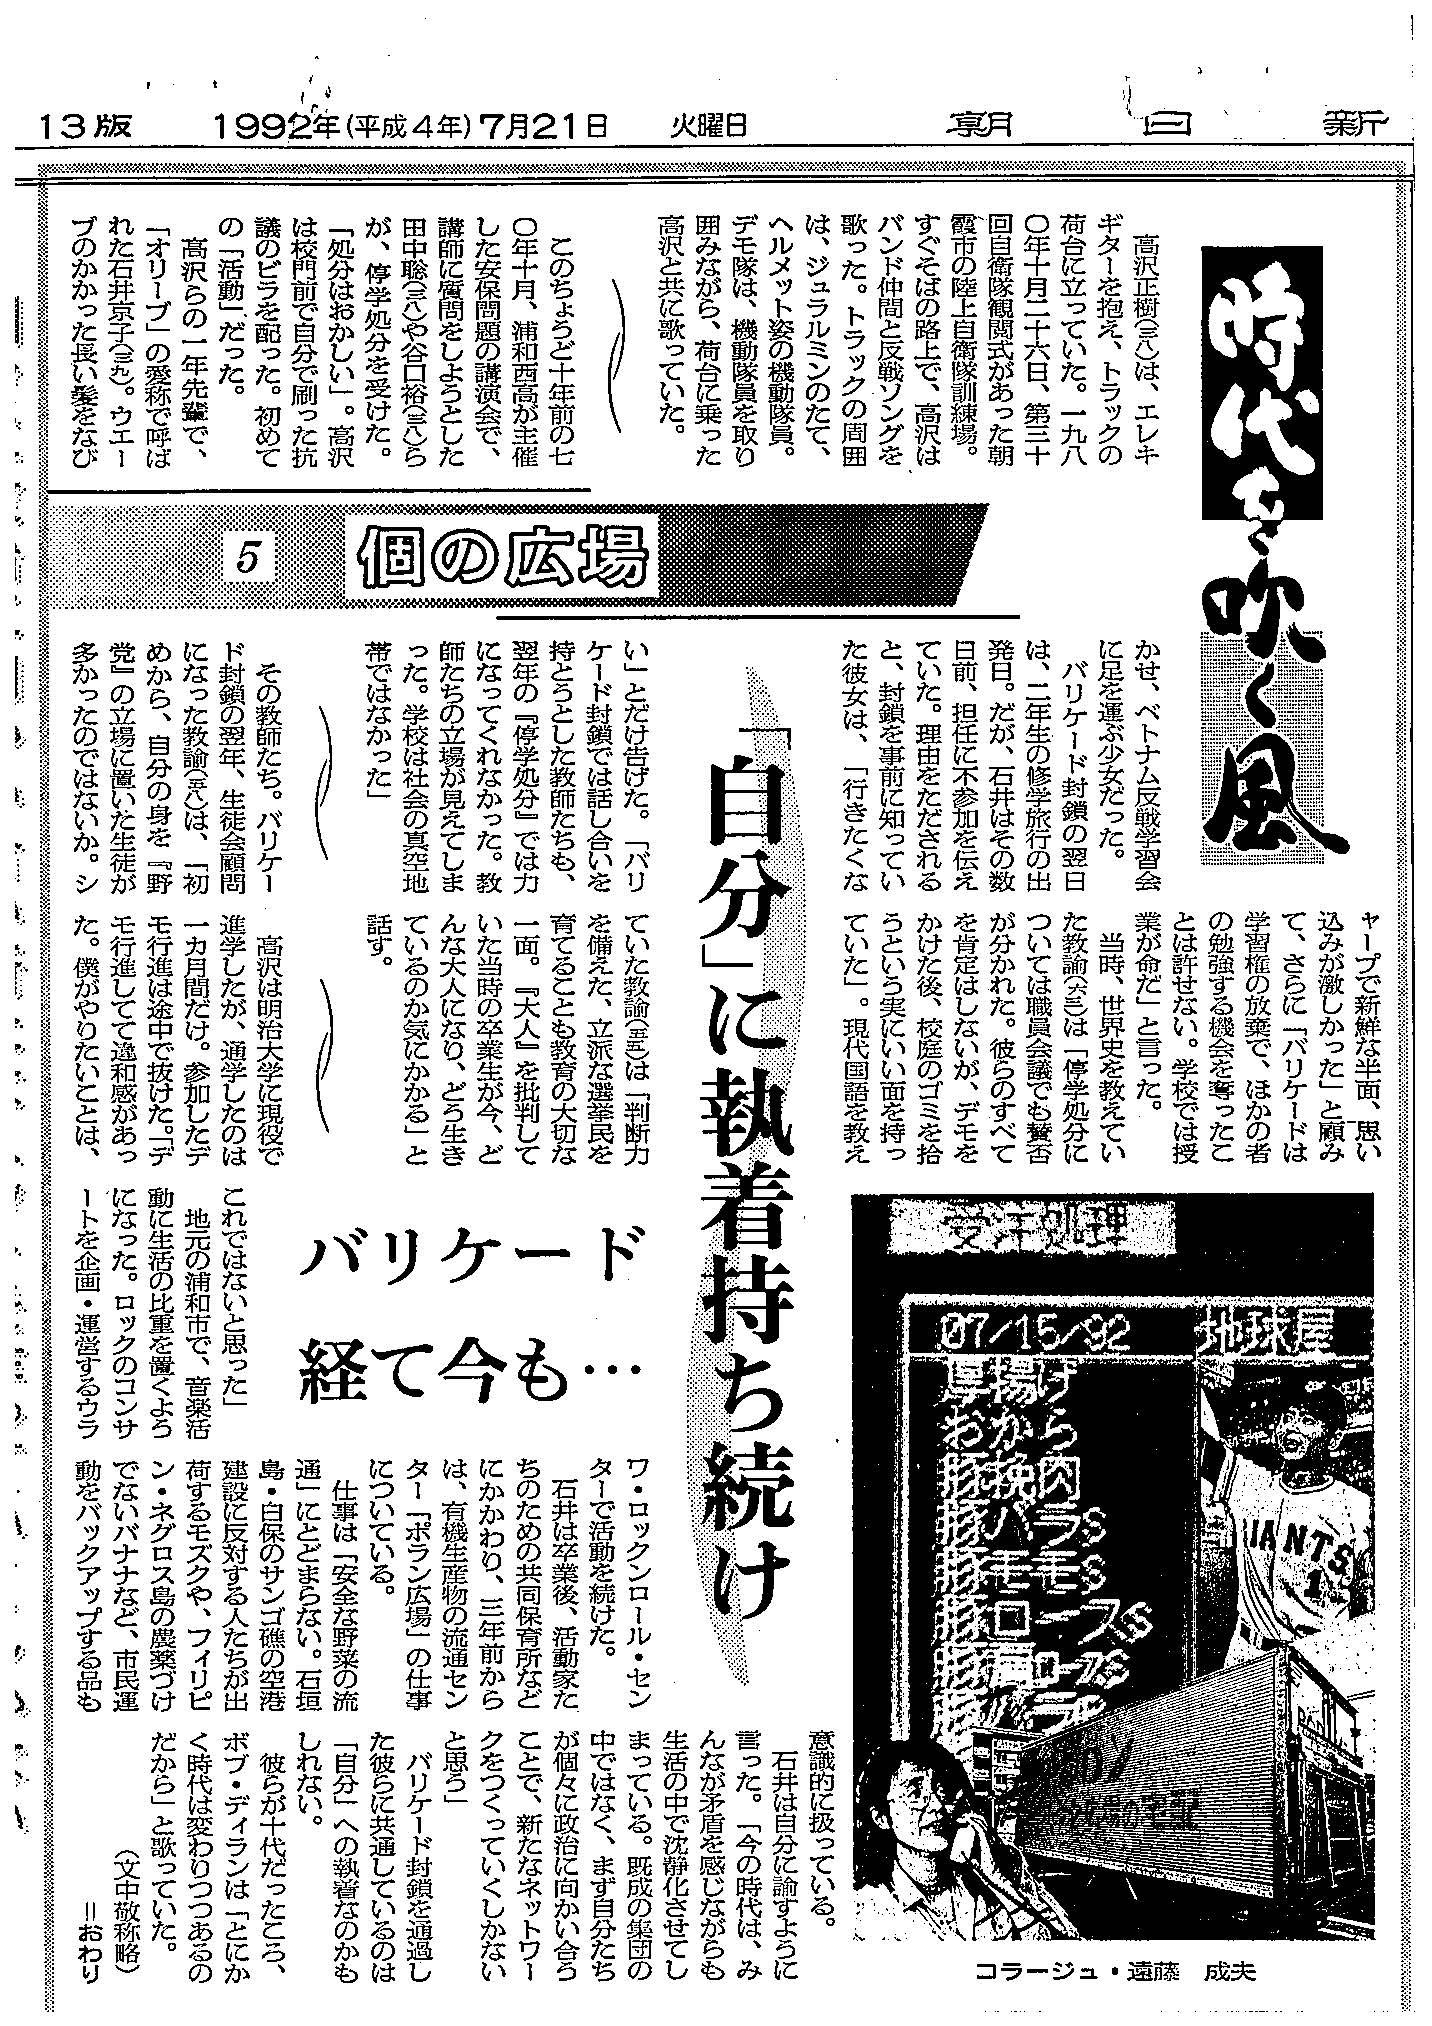 朝日新聞「時代を吹く風」1992